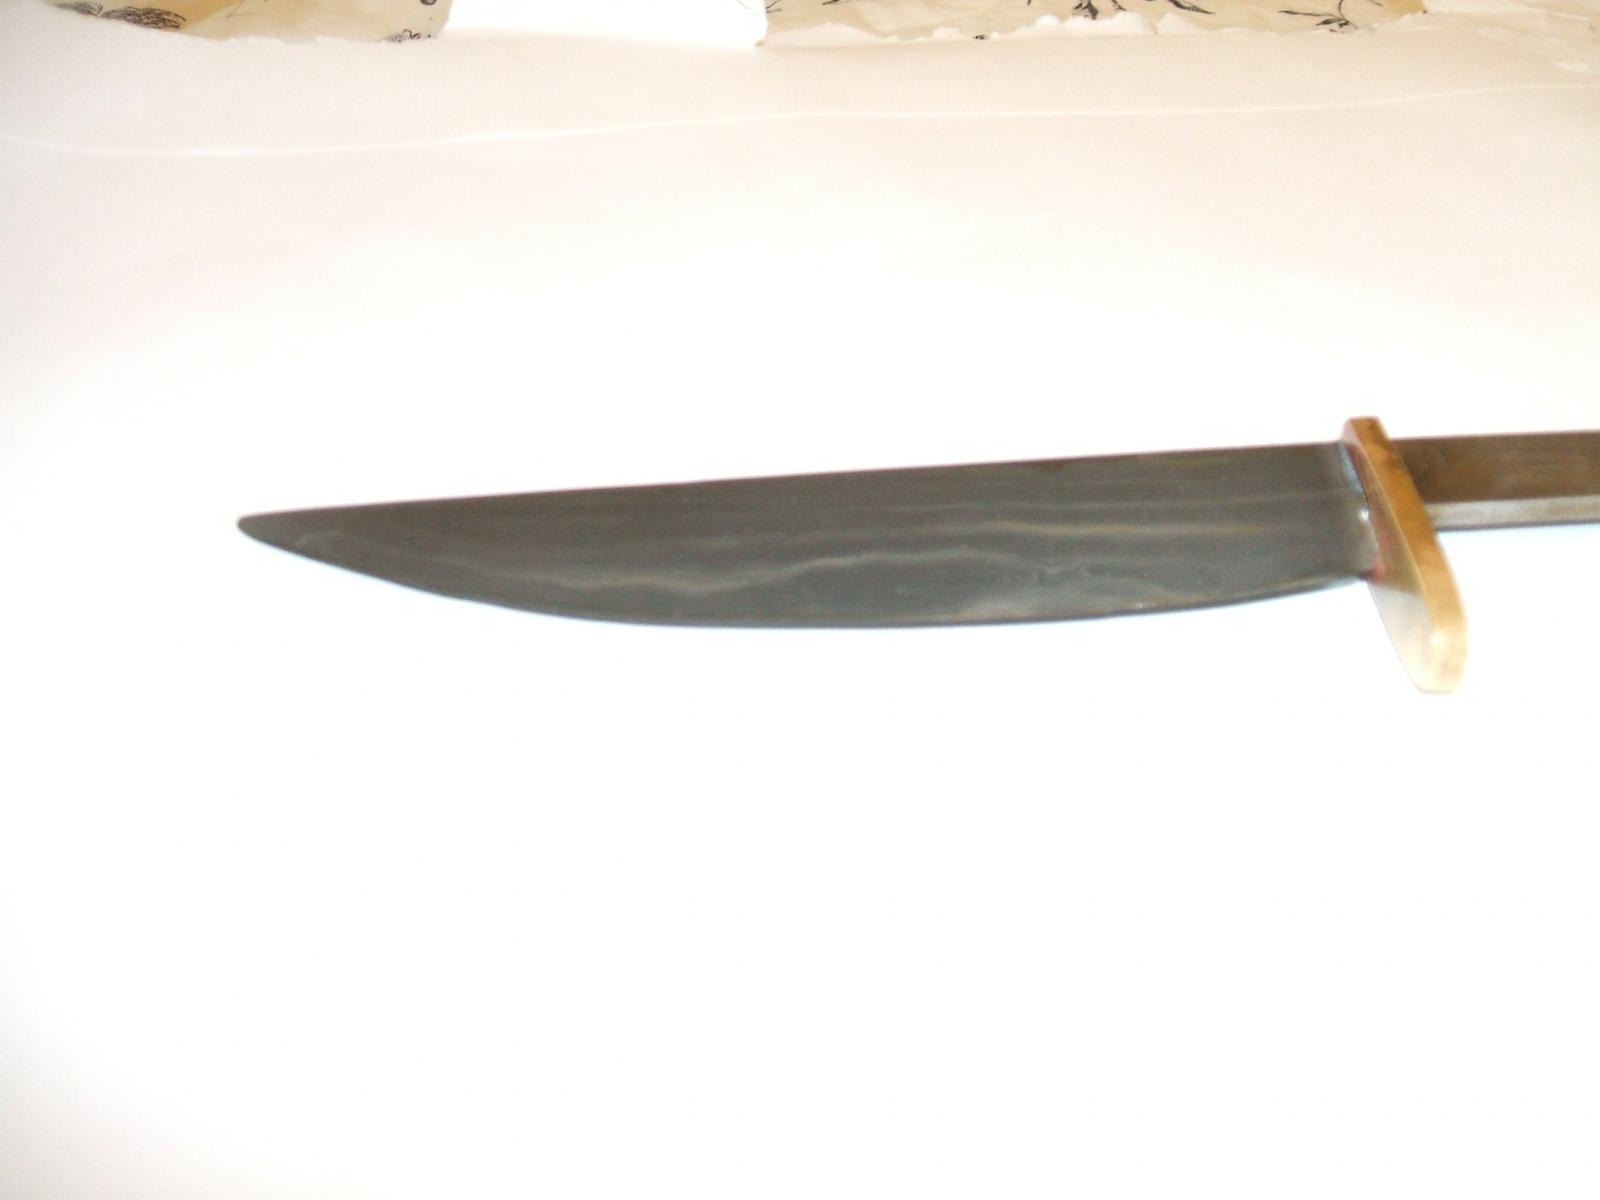 Laminated knife